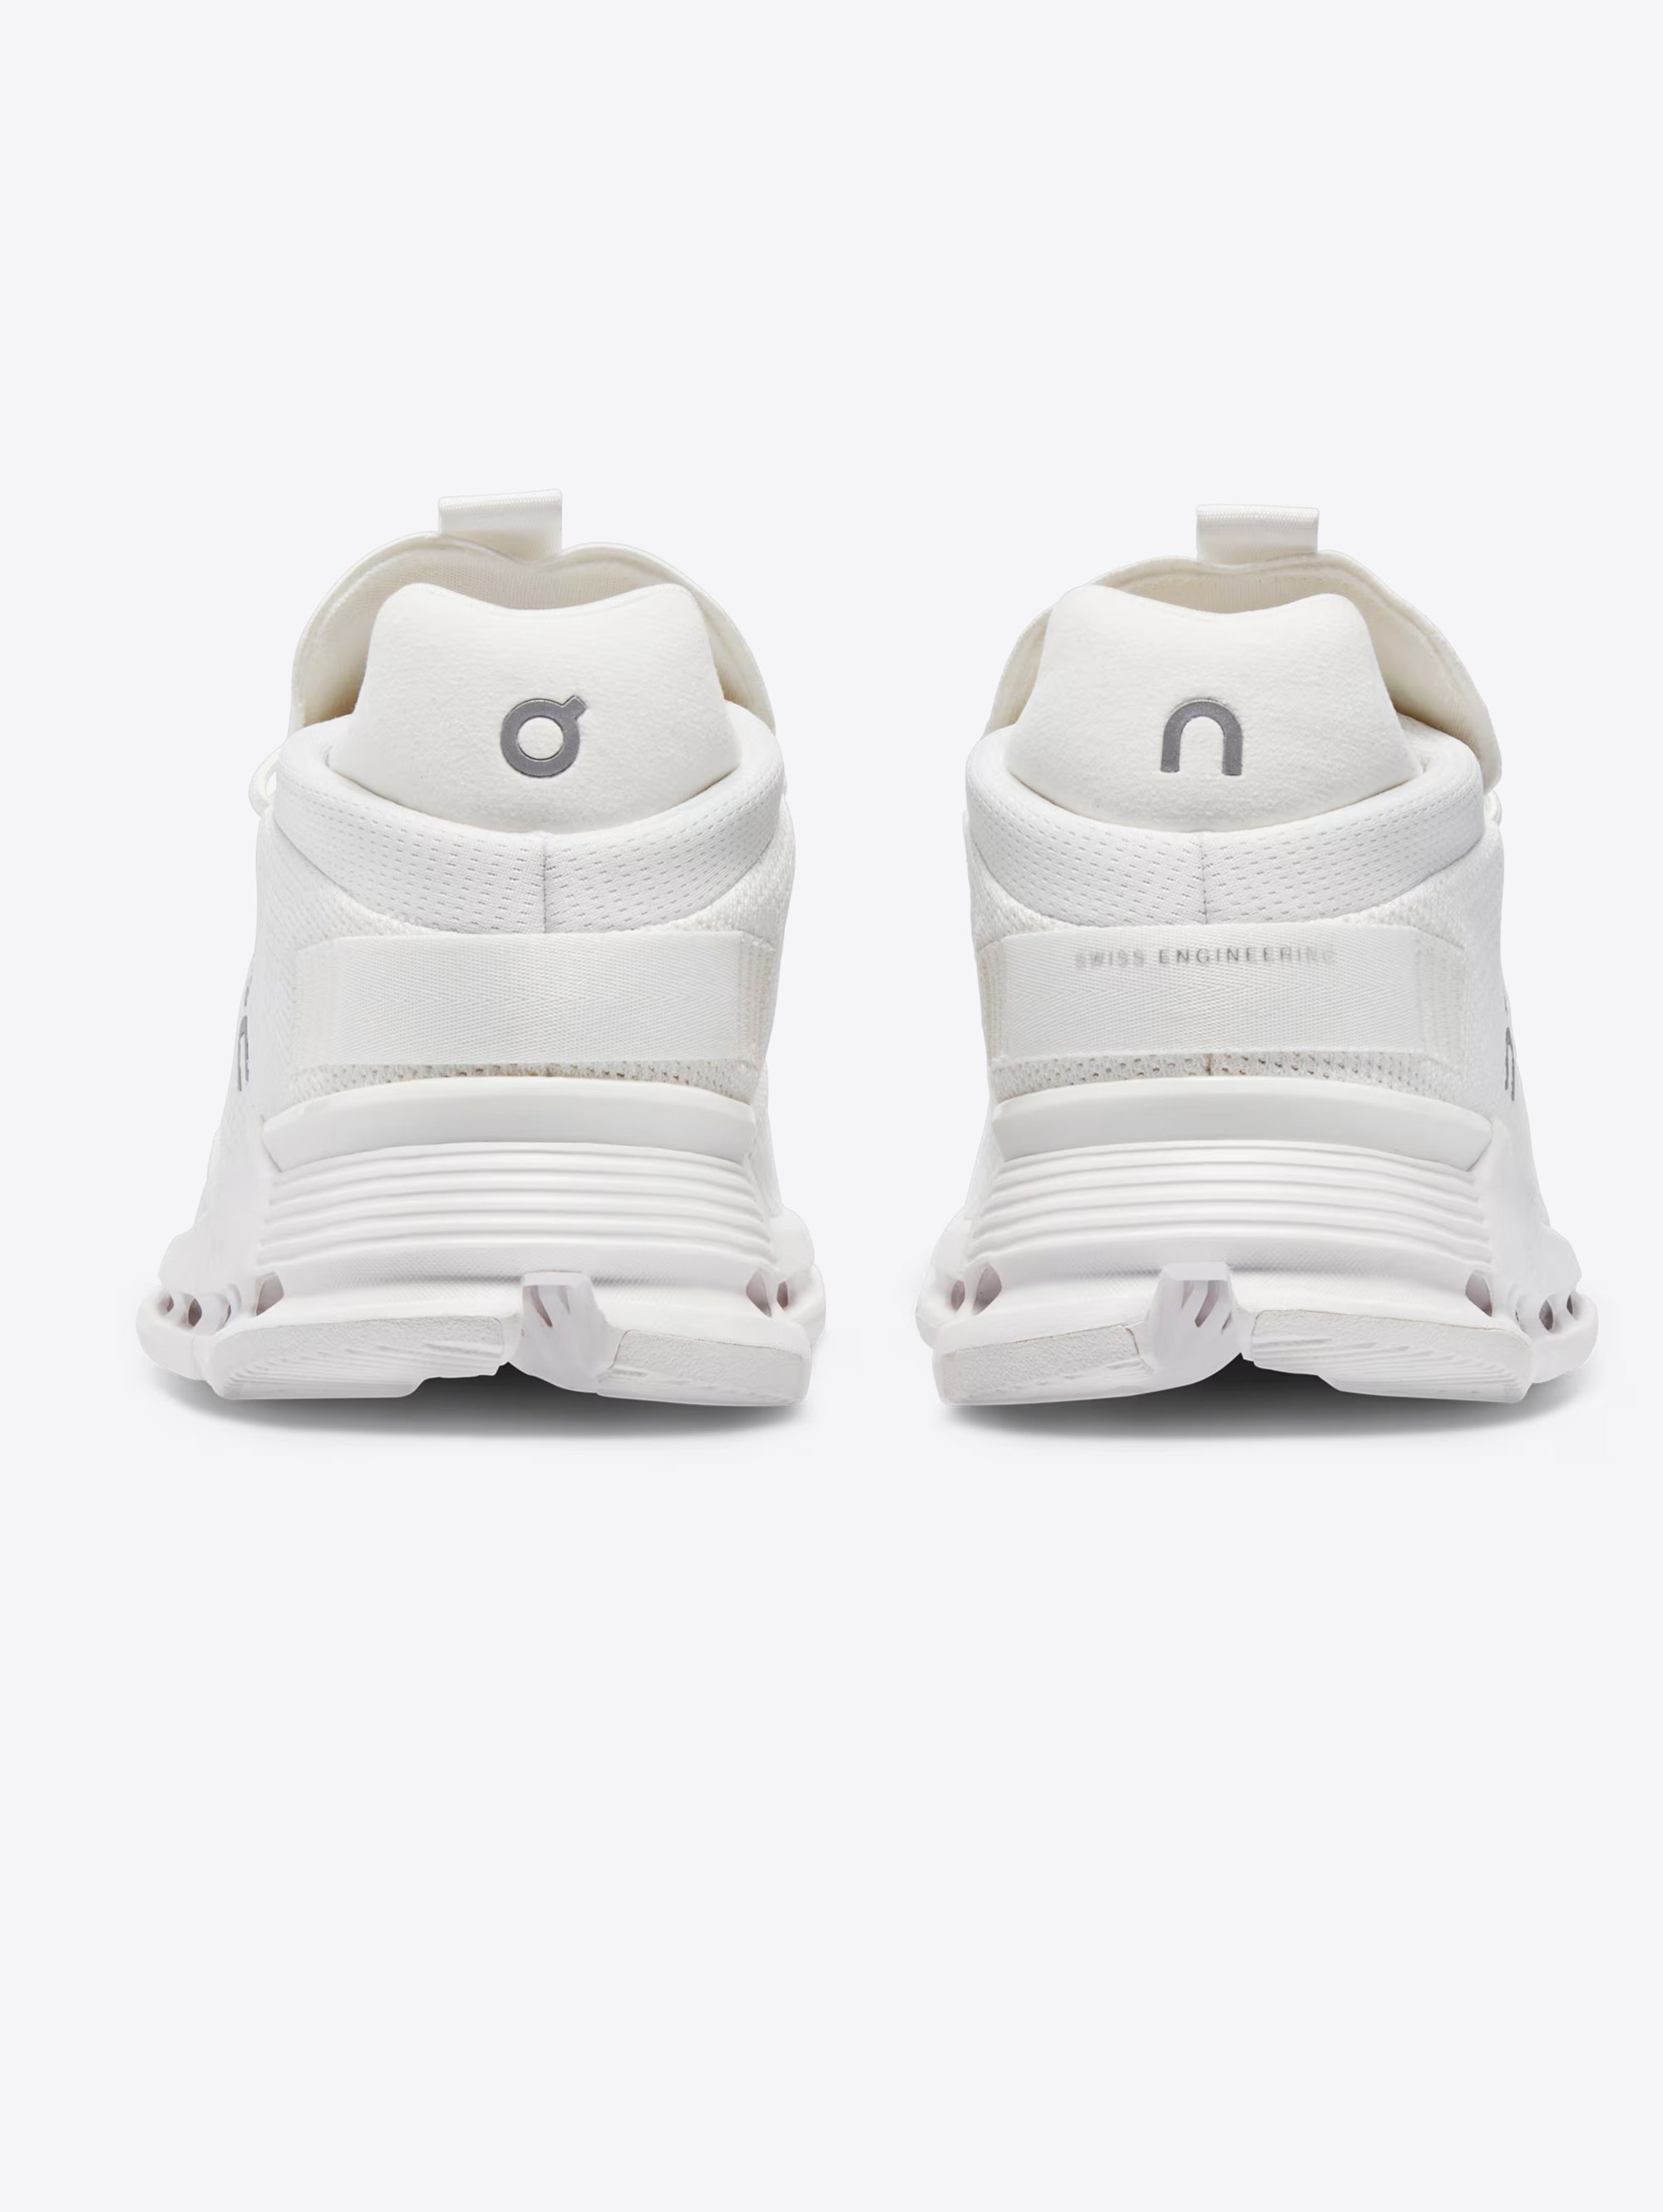 Cloudnova Form Men's Sneakers White